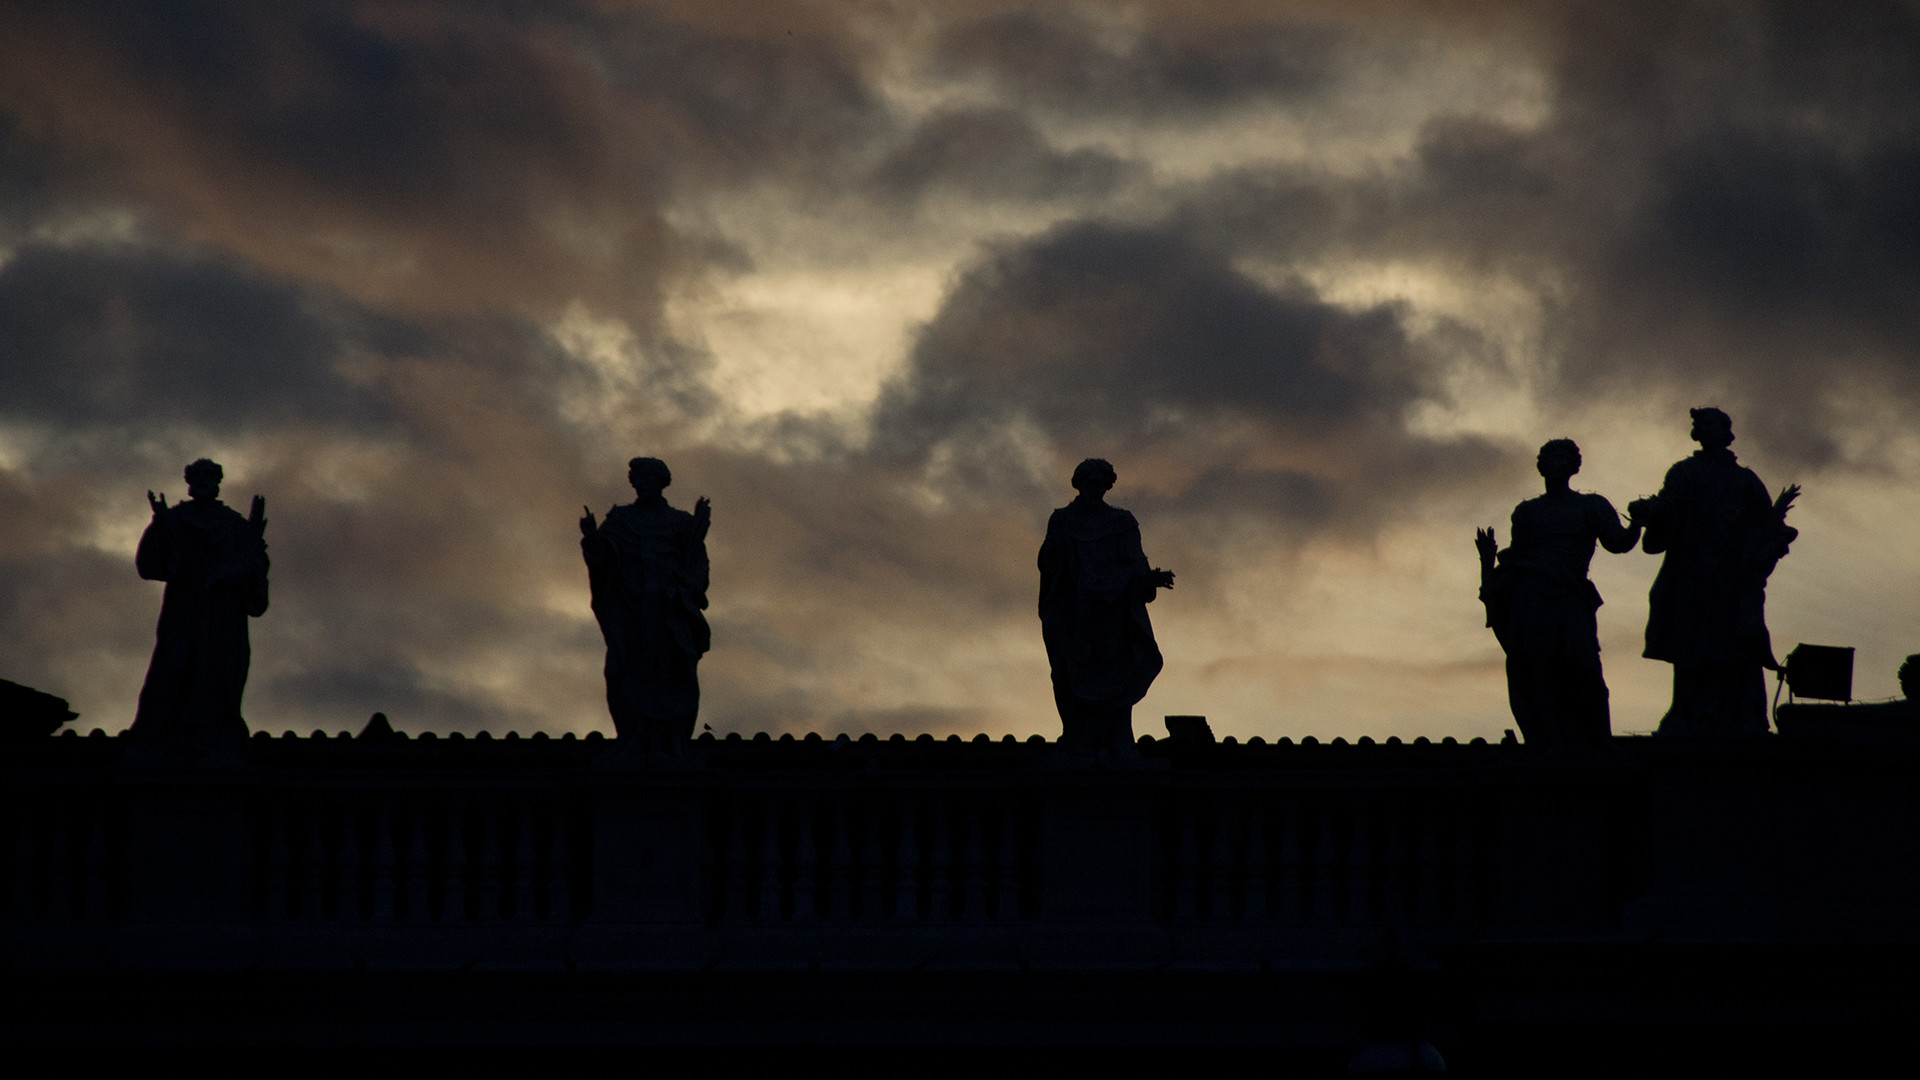 Les apôtres veillent sur l'Eglise, Statues de la place Saint-Pierre, Vatican | © flickr/atrogu/CC BY-NC-ND 2.0